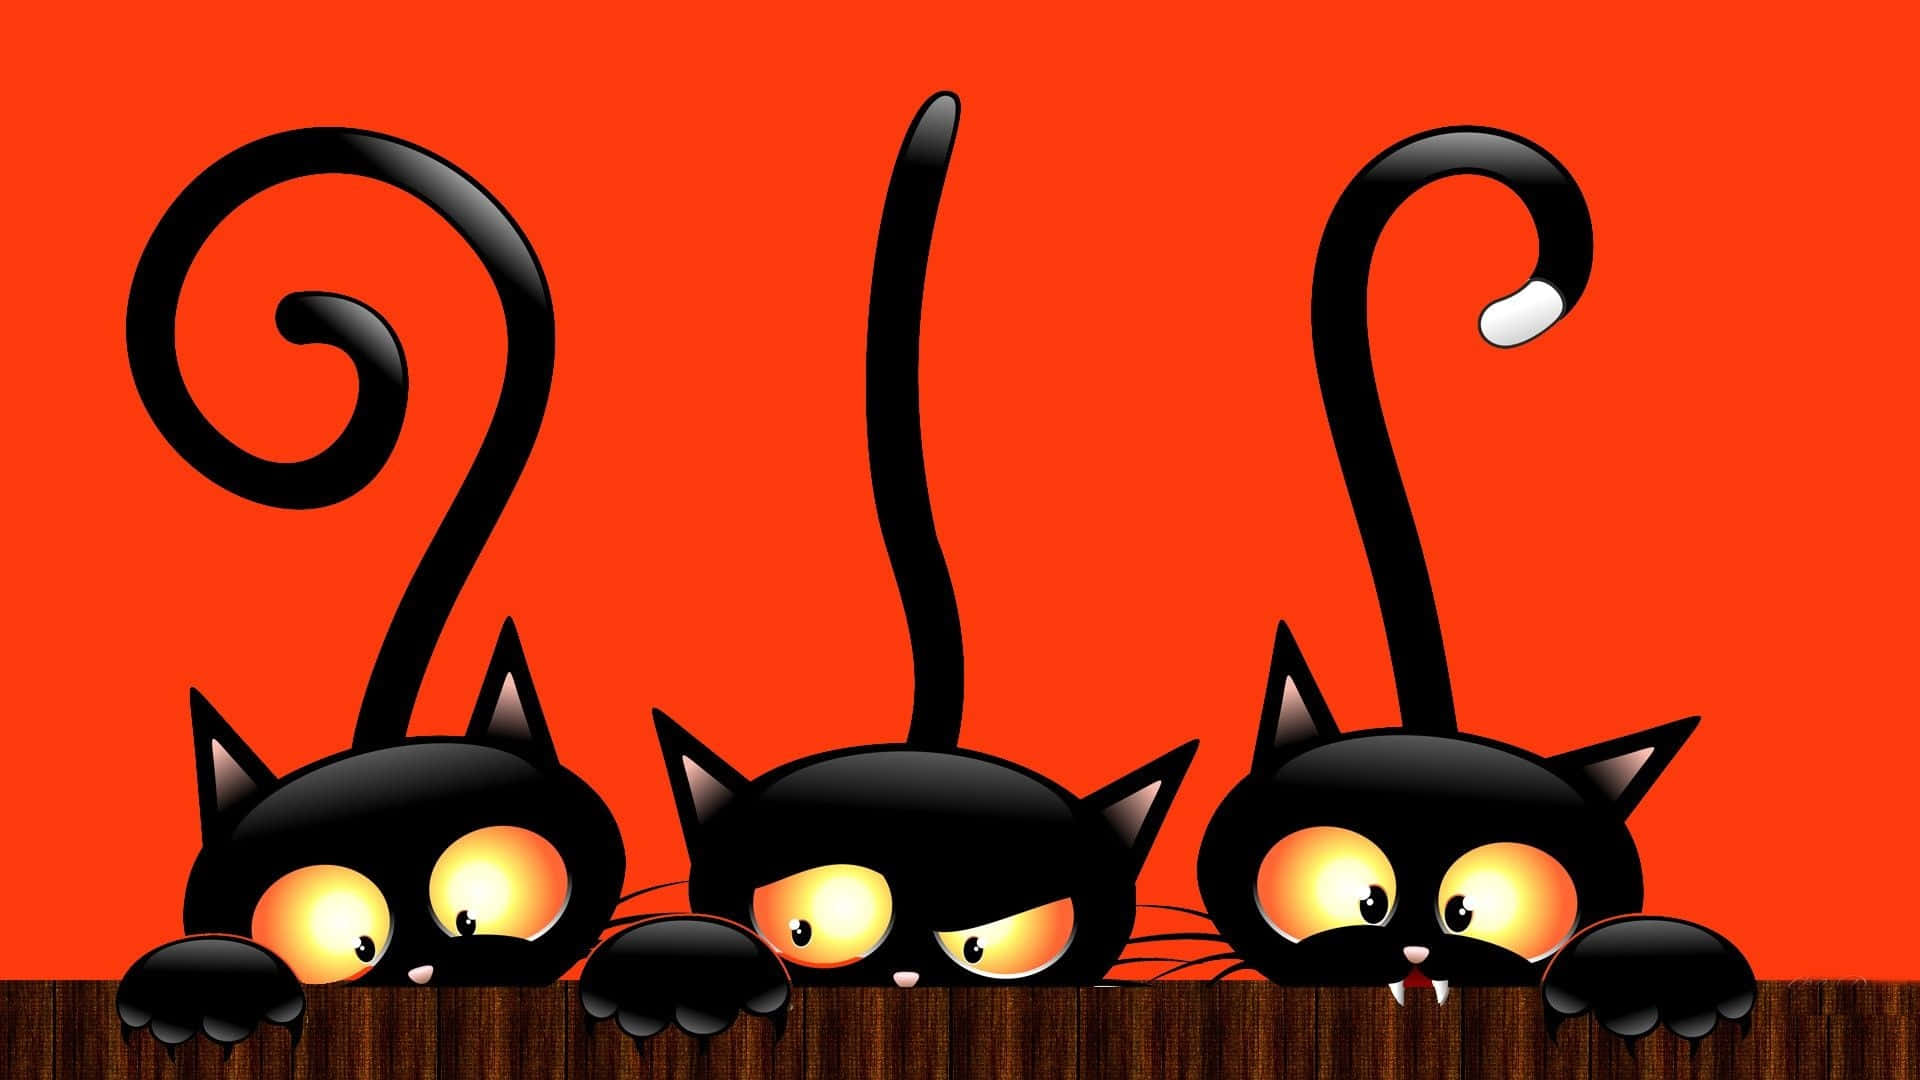 Halloweenlindos Gatos Negros De Miedo Con Imagen Roja Impactante.